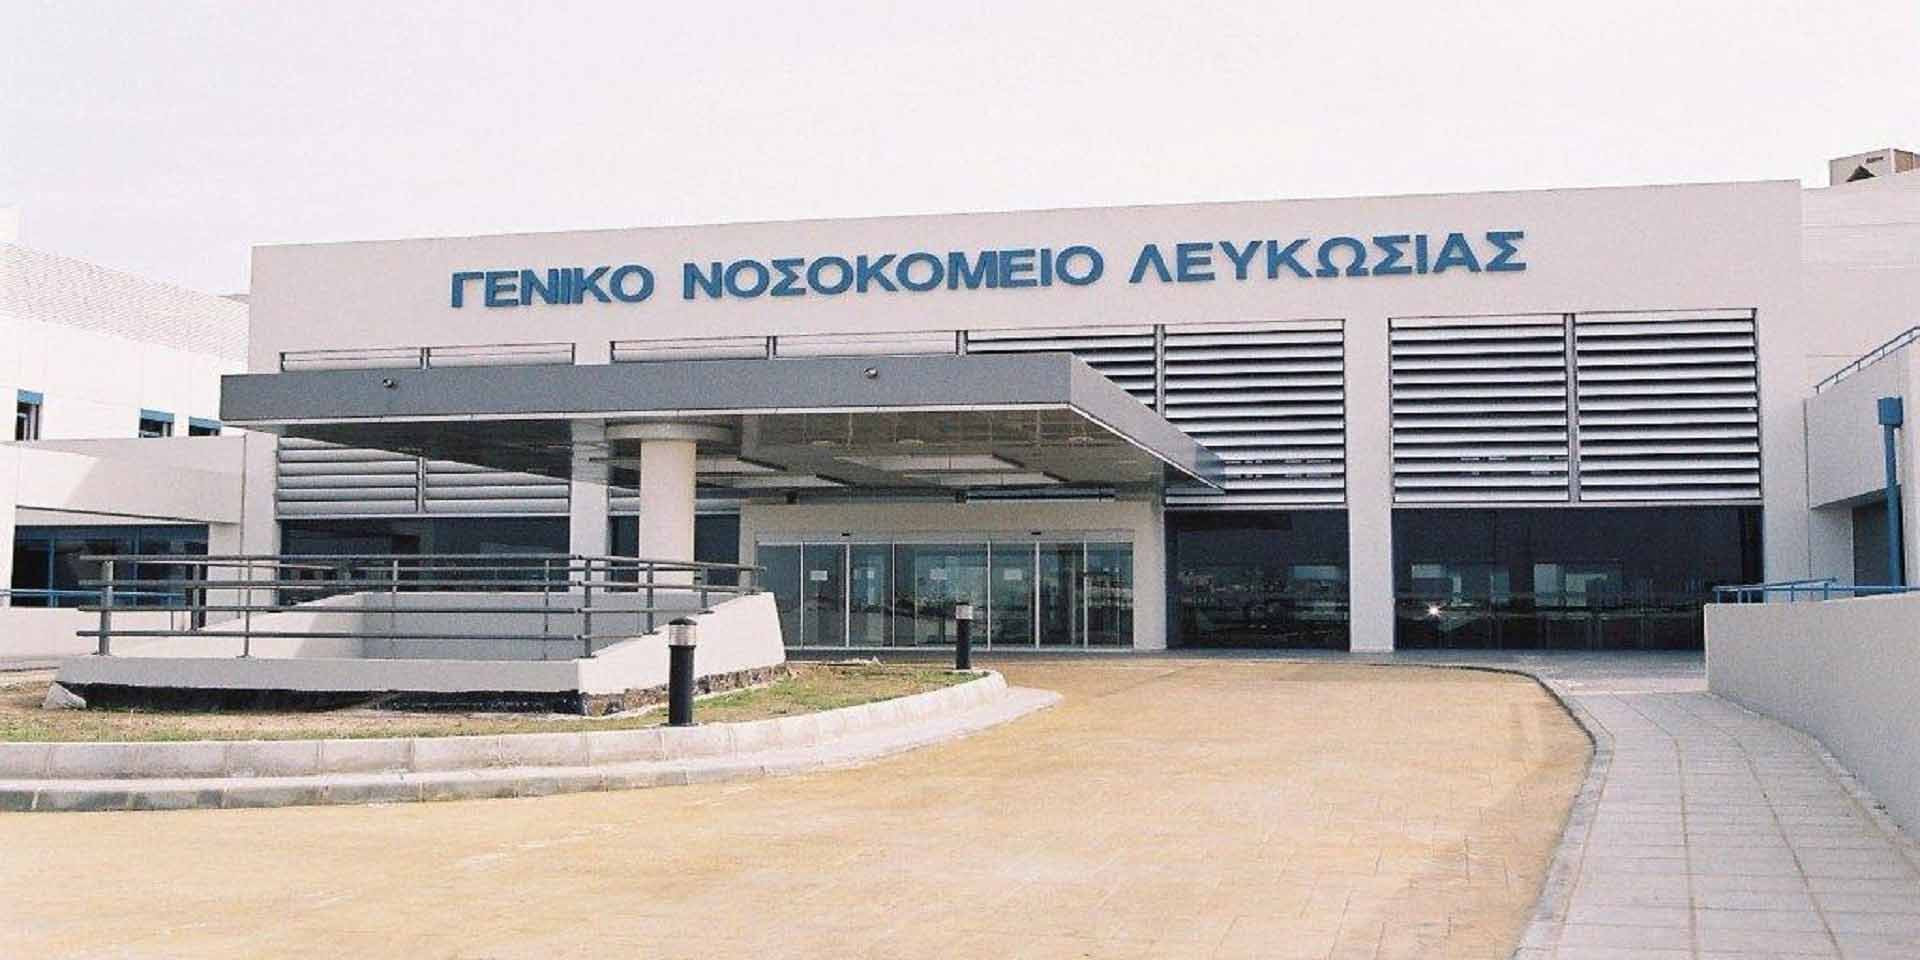 Θετικοί στον κορωνοϊό τέσσερις ασθενείς και μέλος του προσωπικού του Γενικού Νοσοκομείου Λευκωσίας 